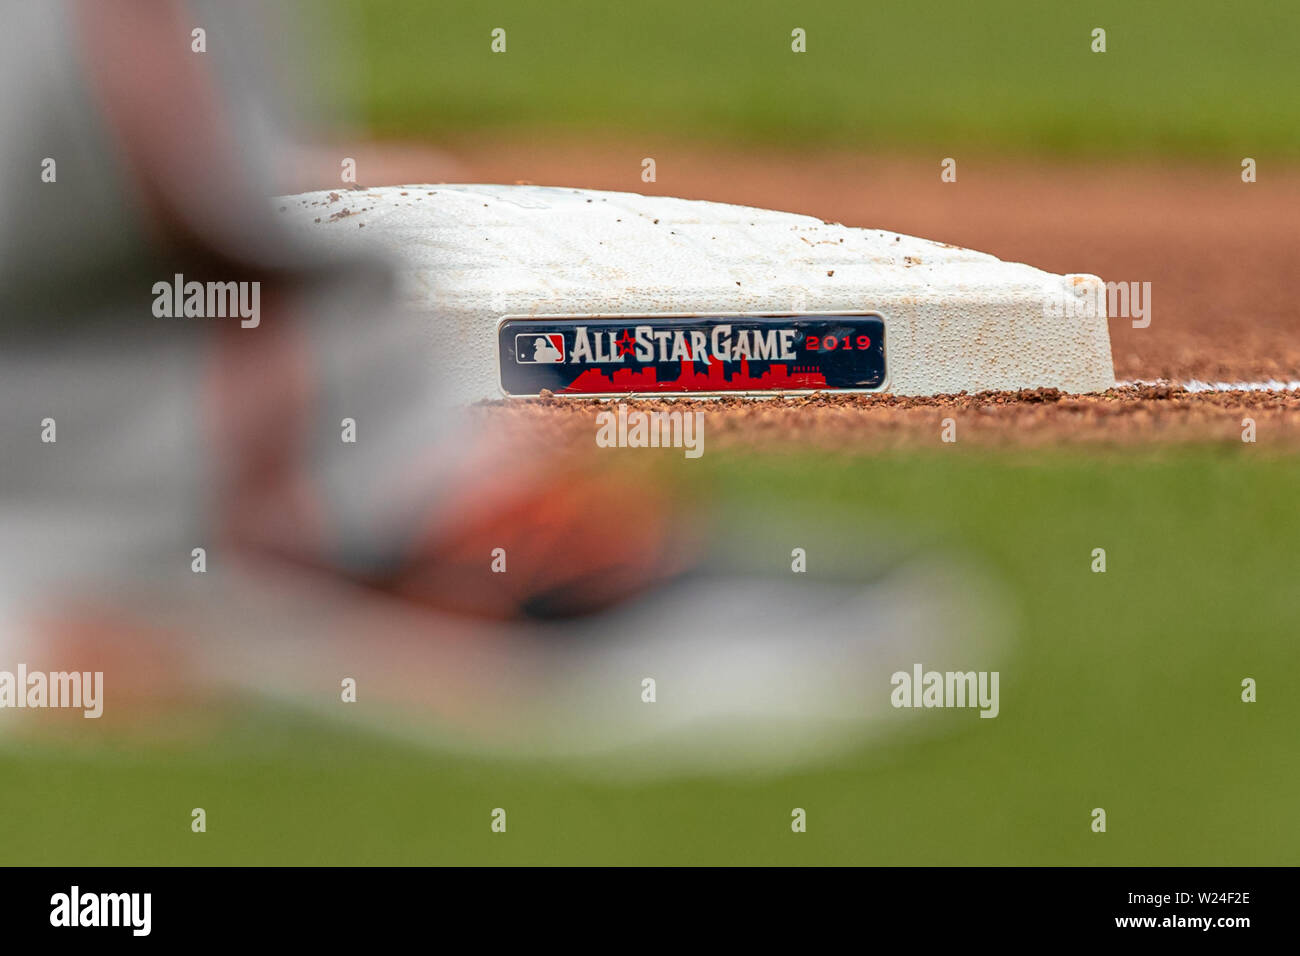 Cleveland, OH, USA. 16. Mai, 2019. Eine detaillierte Ansicht der MLB All Star Game 2019 Logo auf der dritten Base während eines Spiels zwischen den Baltimore Orioles und die Cleveland Indians am 16 Mai, 2019 am progressiven Feld in Cleveland, OH gesehen wird. Adam Lacy/CSM/Alamy leben Nachrichten Stockfoto